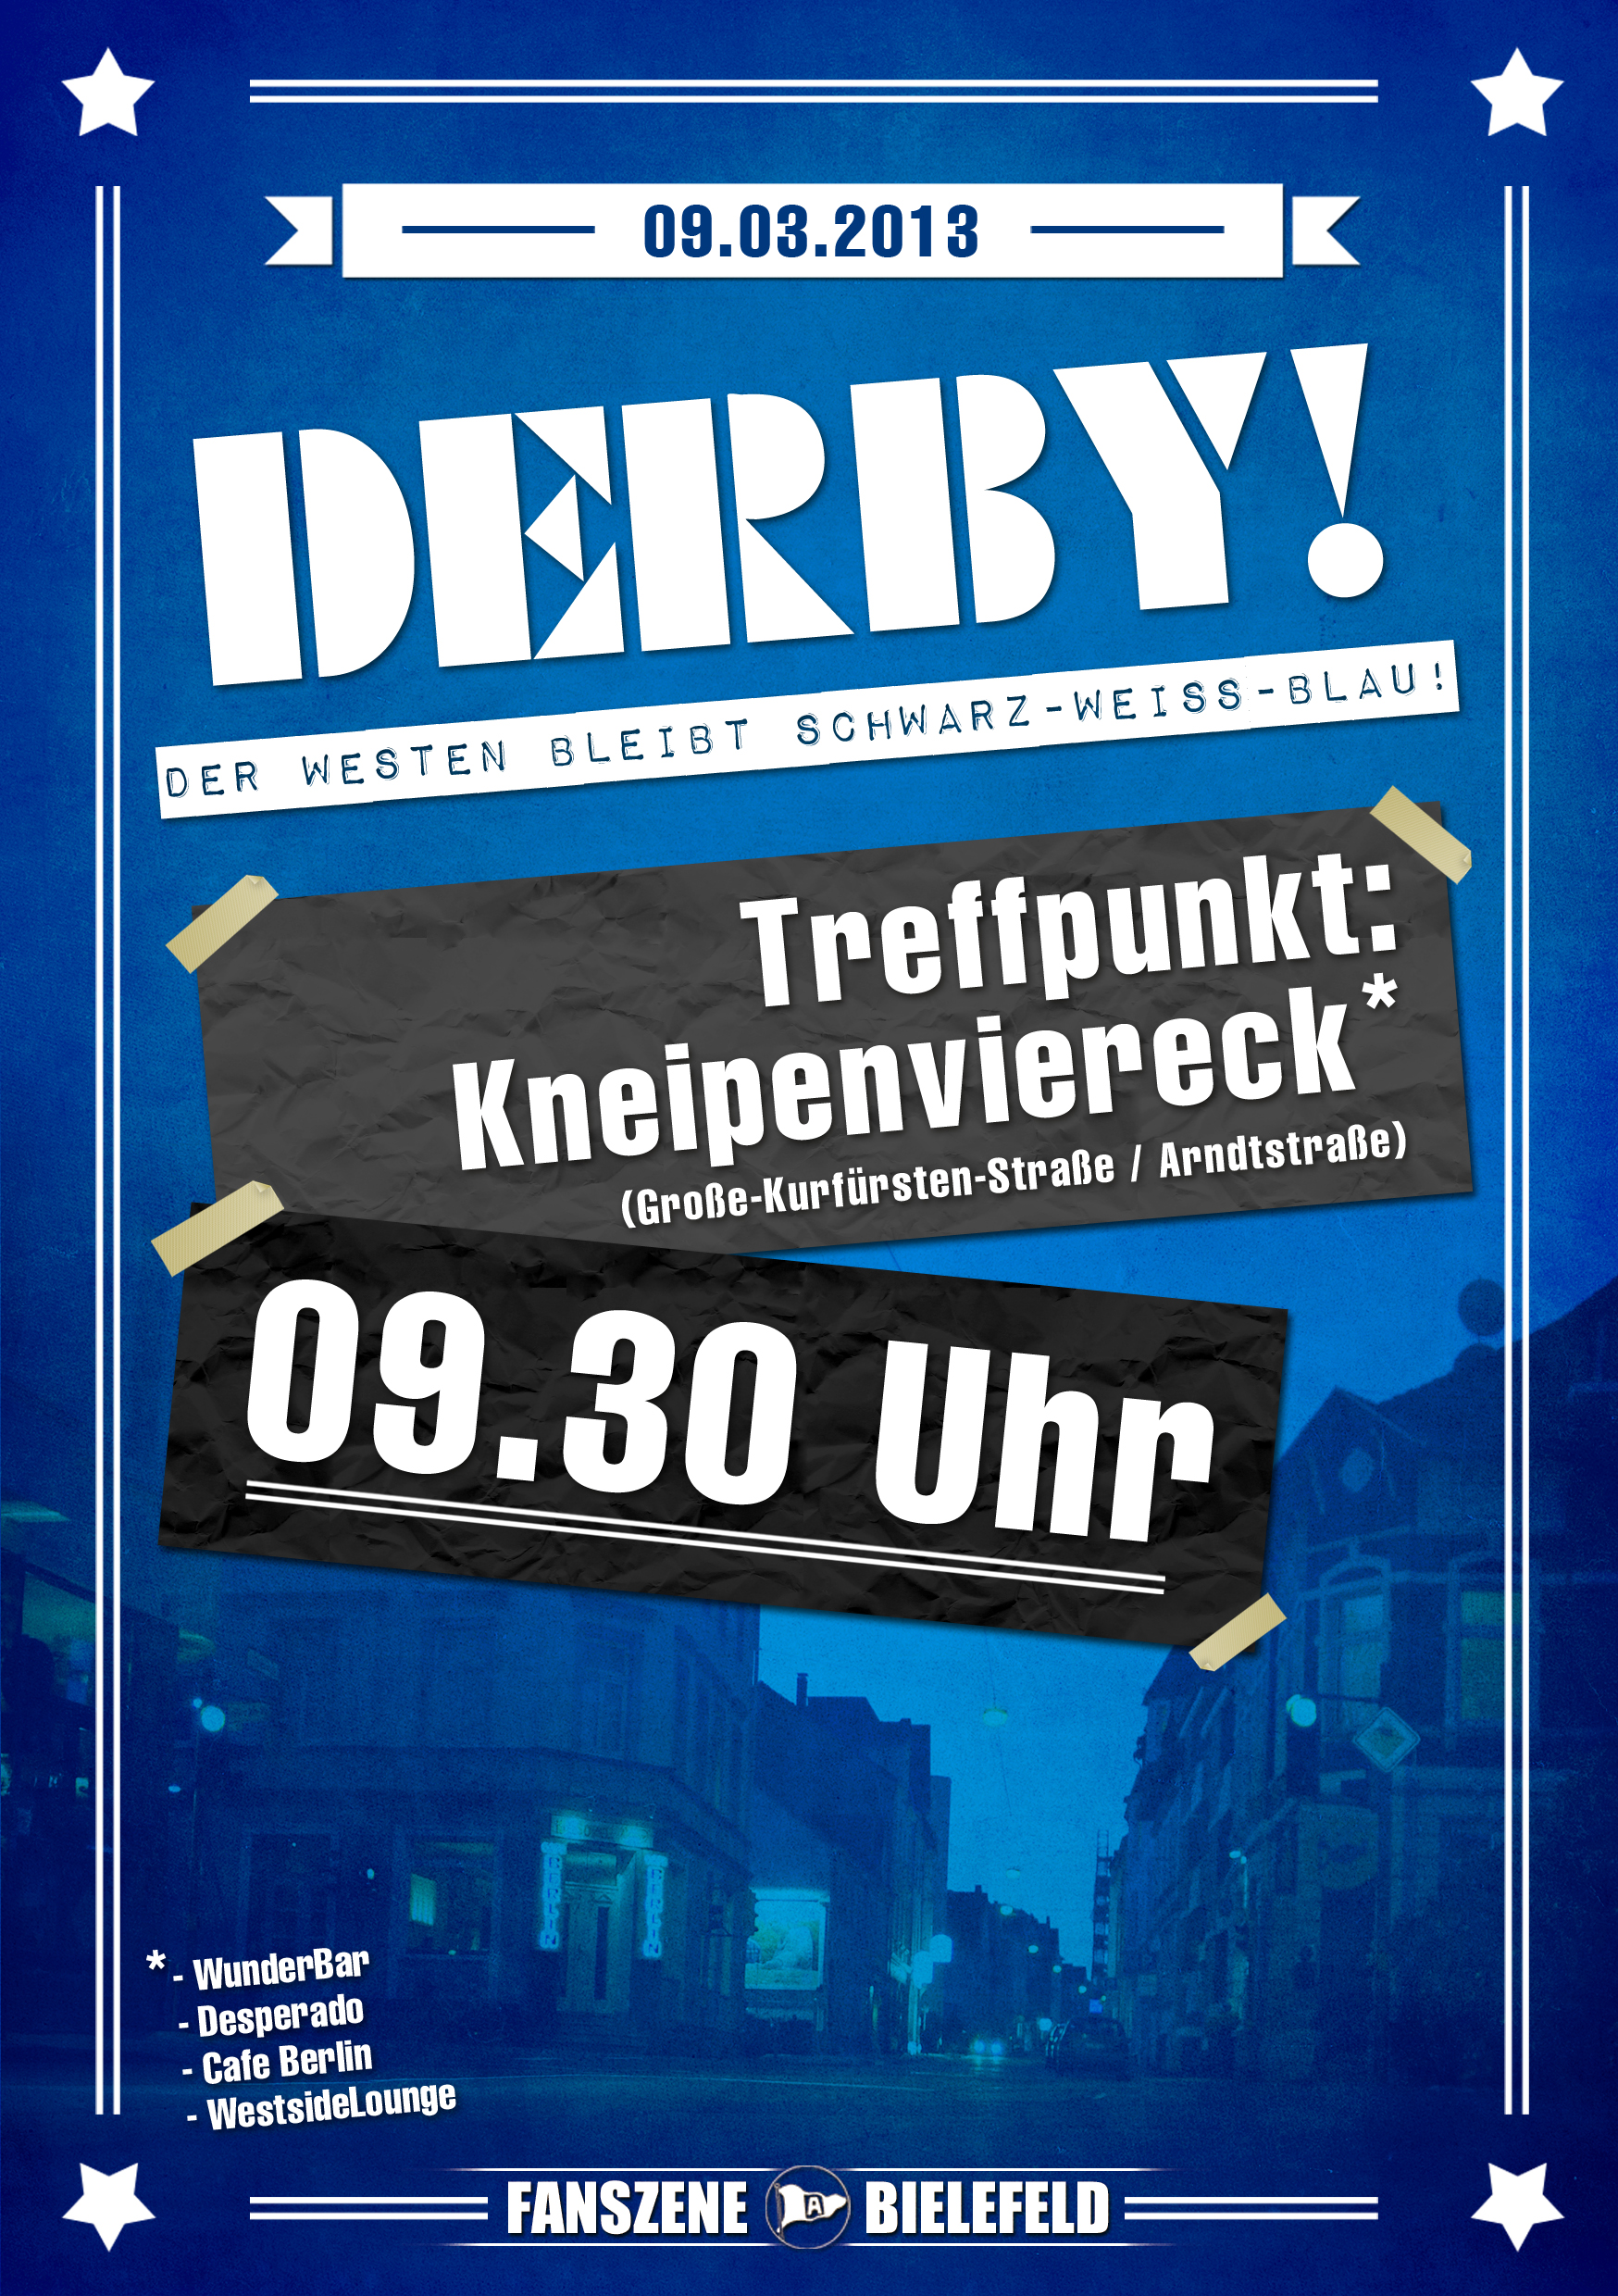 derbytreff2013